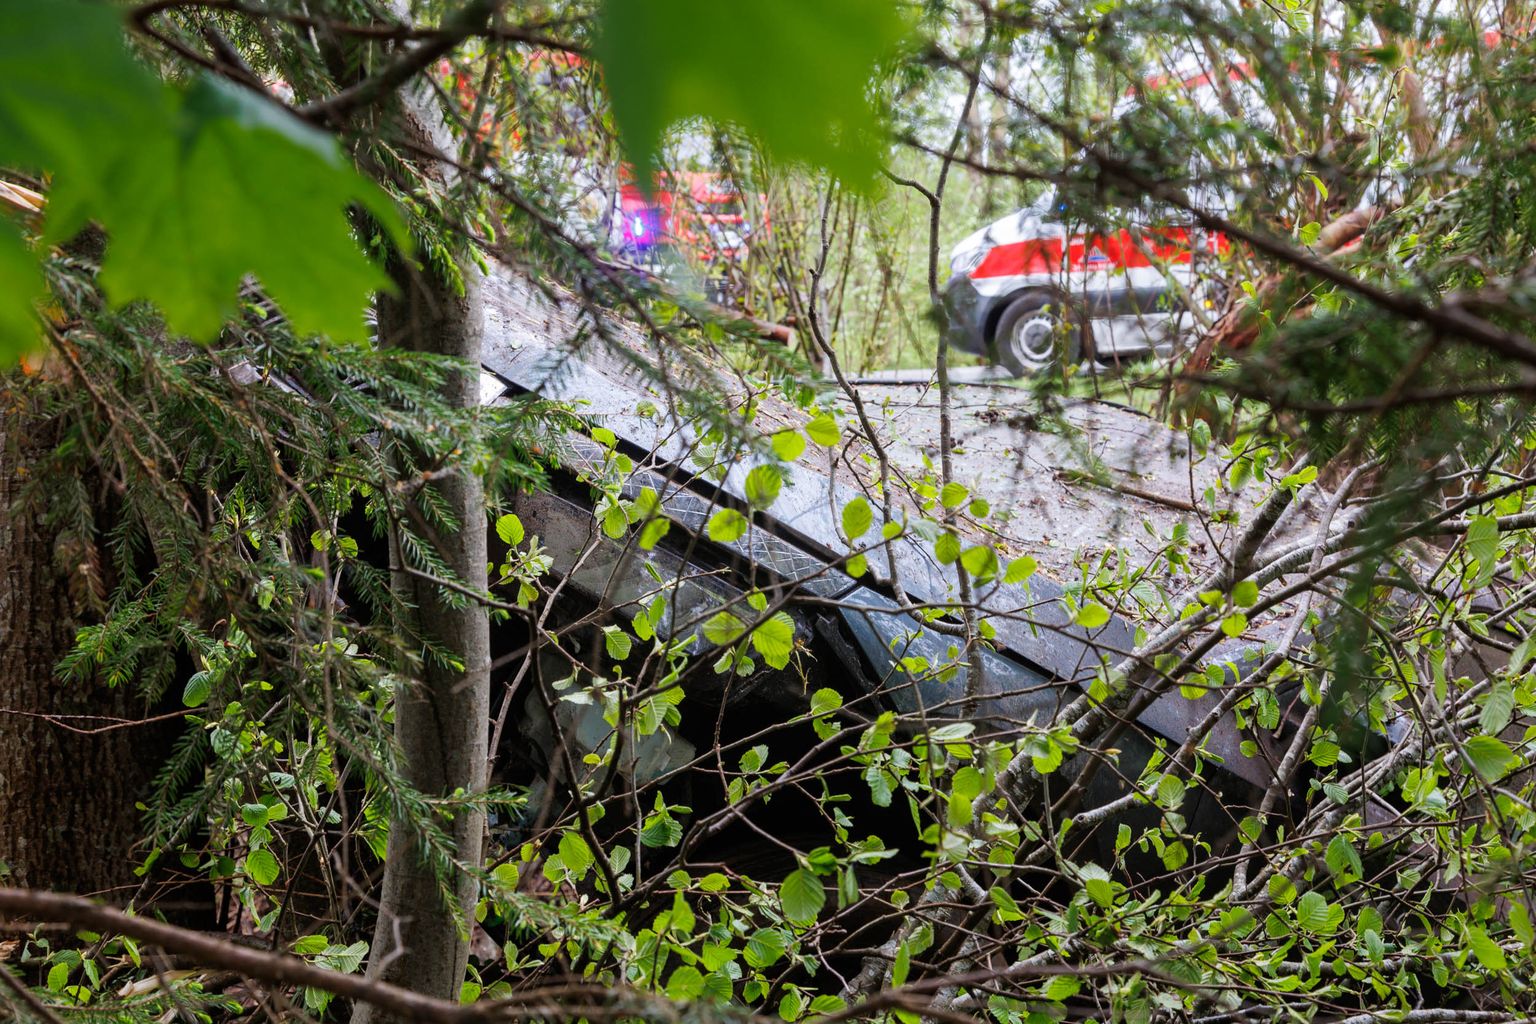 Liiklusõnnetus Otepää linna piiril. 16. mai ennelõunal sõitis Škoda teelt välja ning paiskus vastu puud. Autos viibinud juht võeti kiirabi hoole alla.